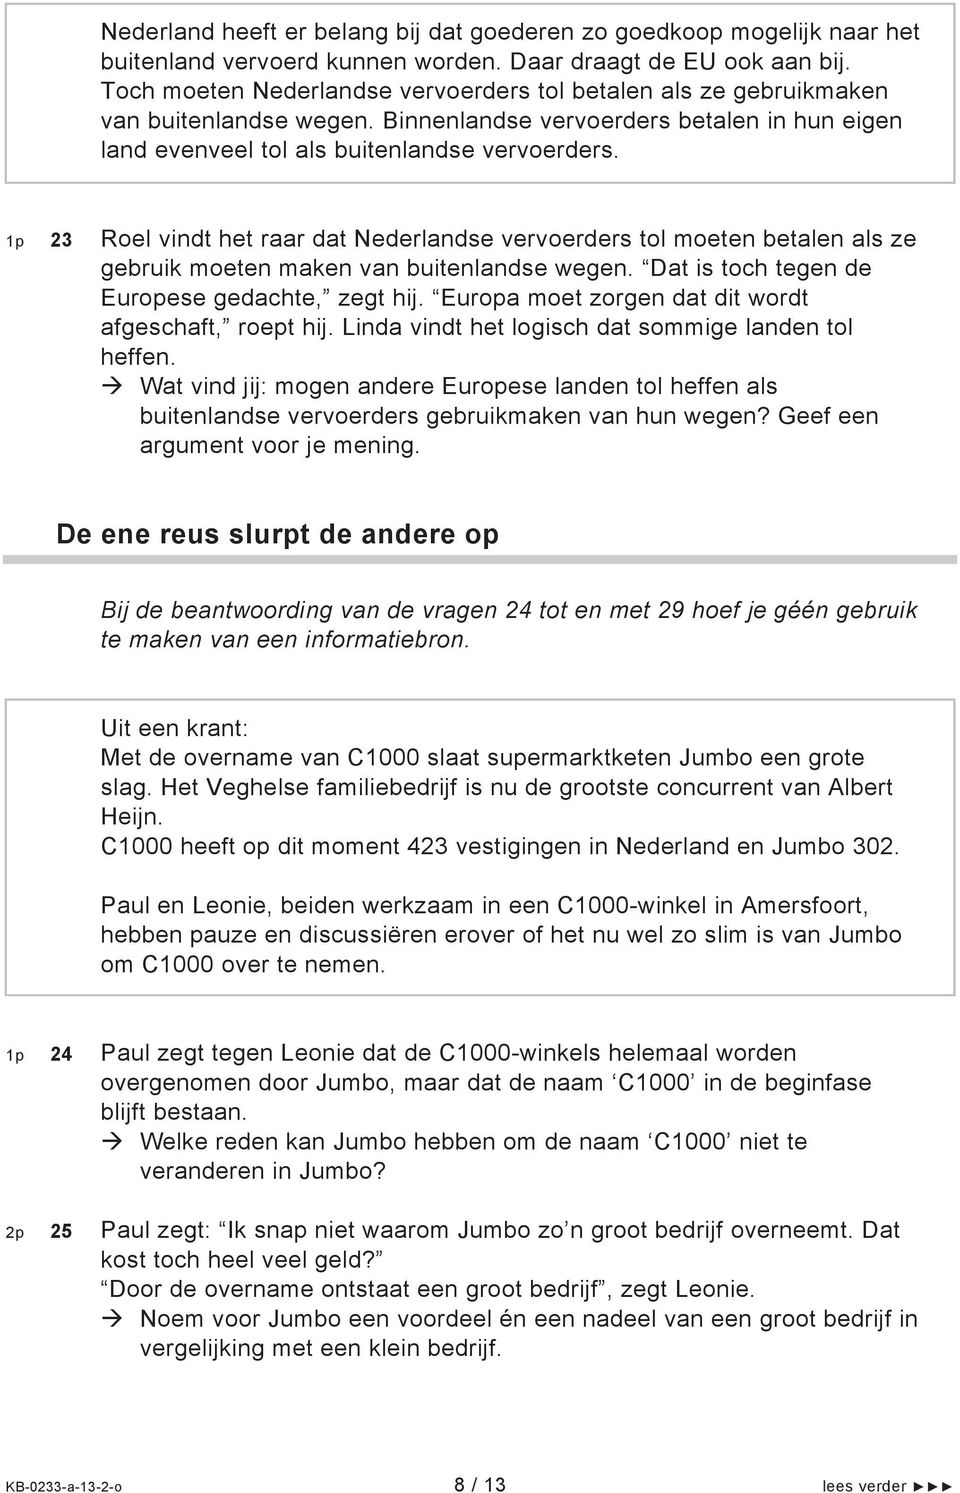 1p 23 Roel vindt het raar dat Nederlandse vervoerders tol moeten betalen als ze gebruik moeten maken van buitenlandse wegen. Dat is toch tegen de Europese gedachte, zegt hij.